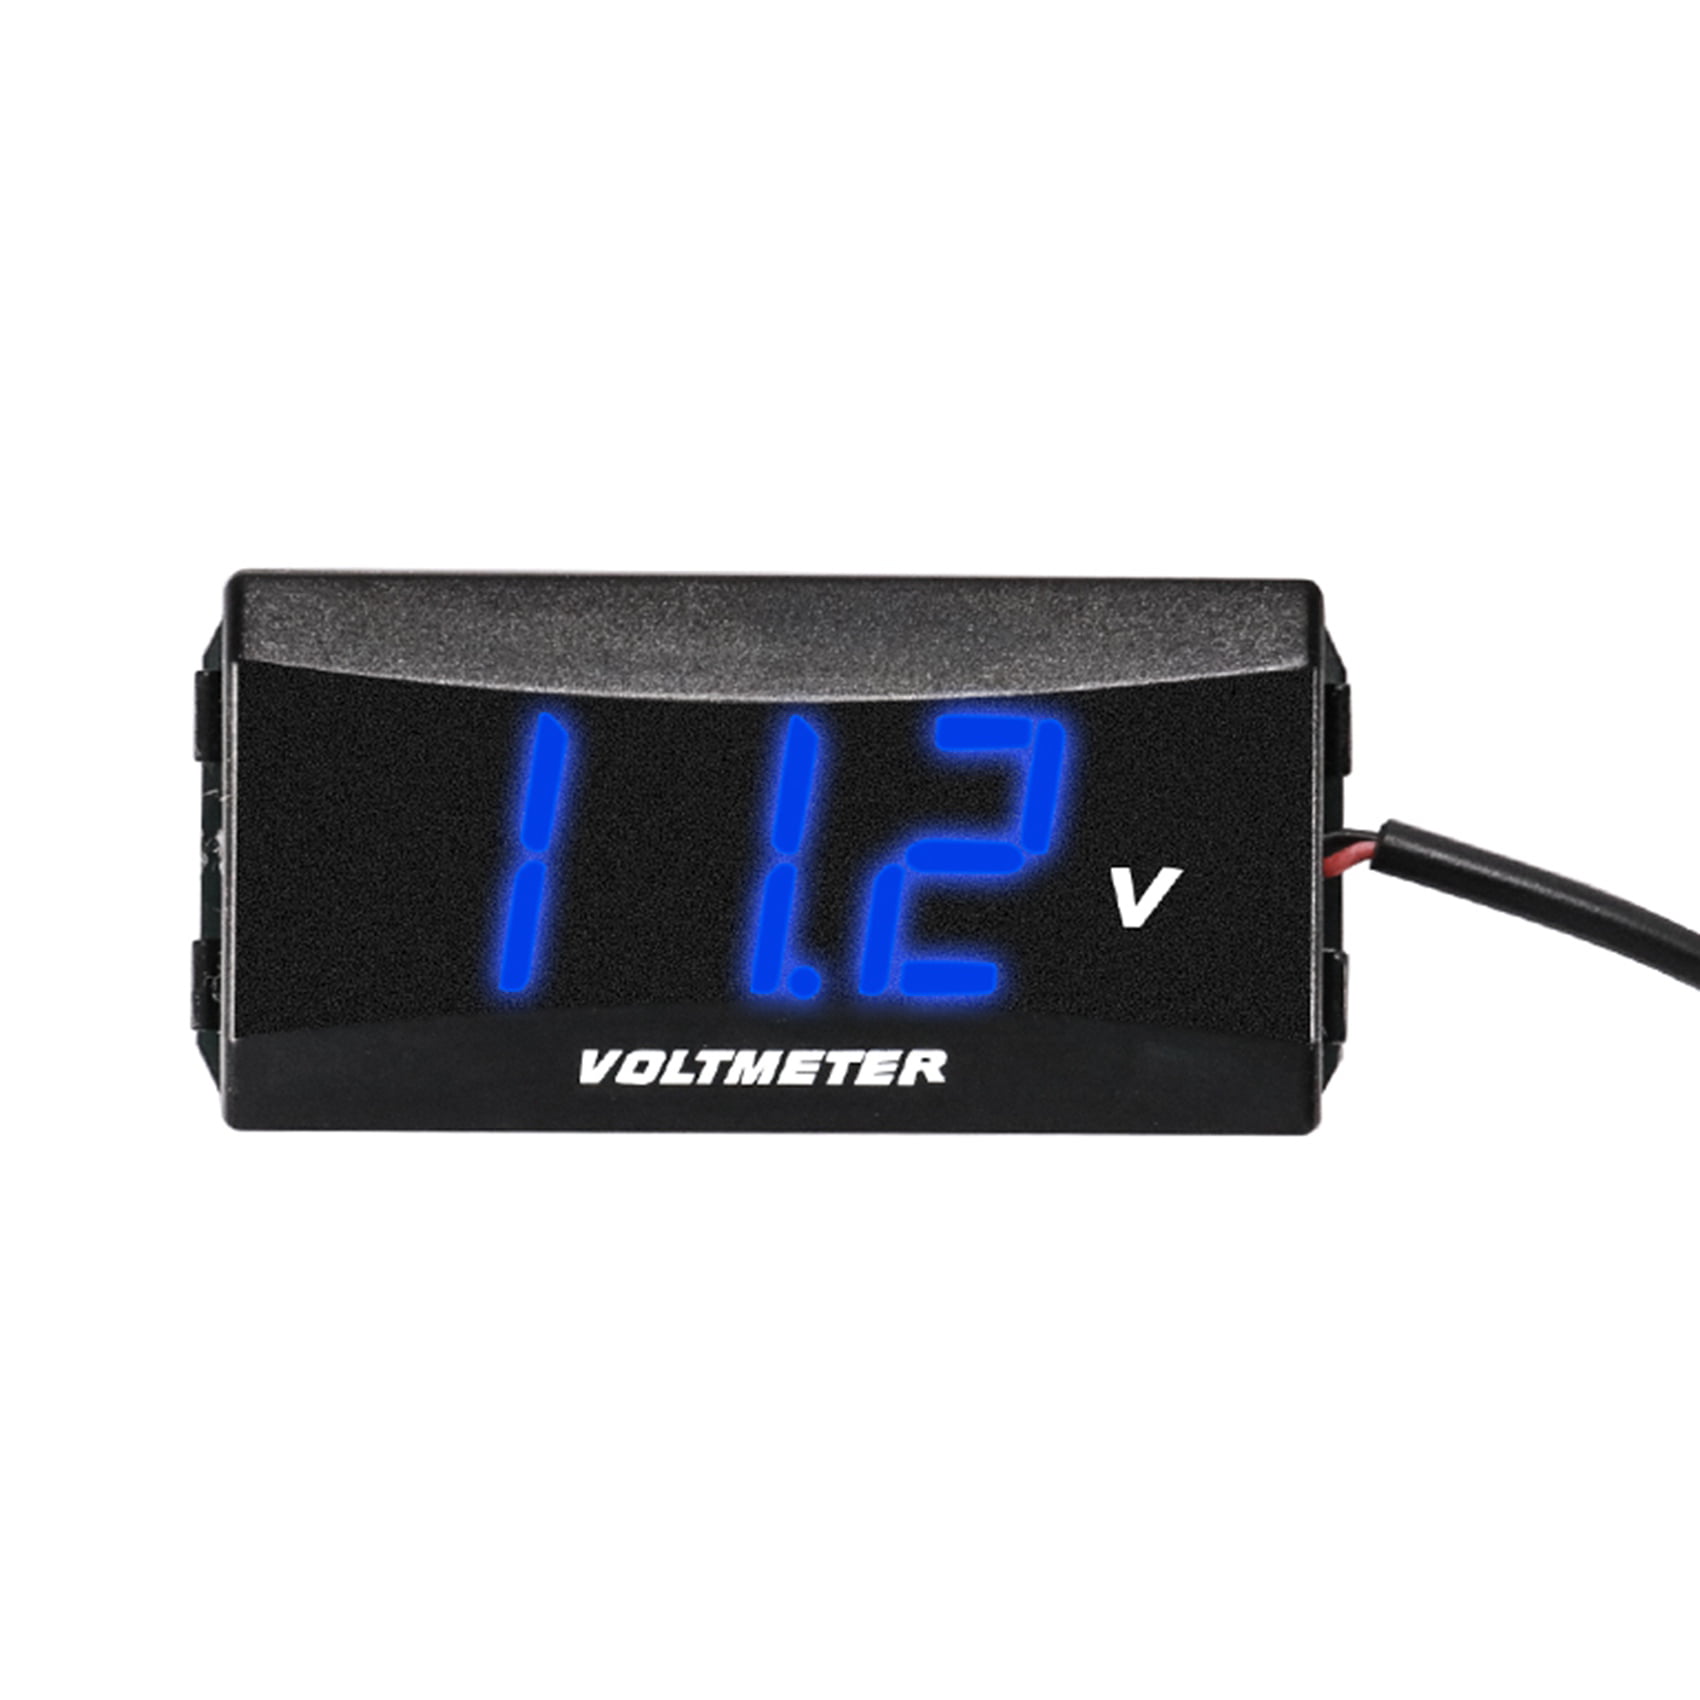 12V Ultra Thin Blue LED Display Voltage Meter Digital Voltmeter Panel Car Truck 